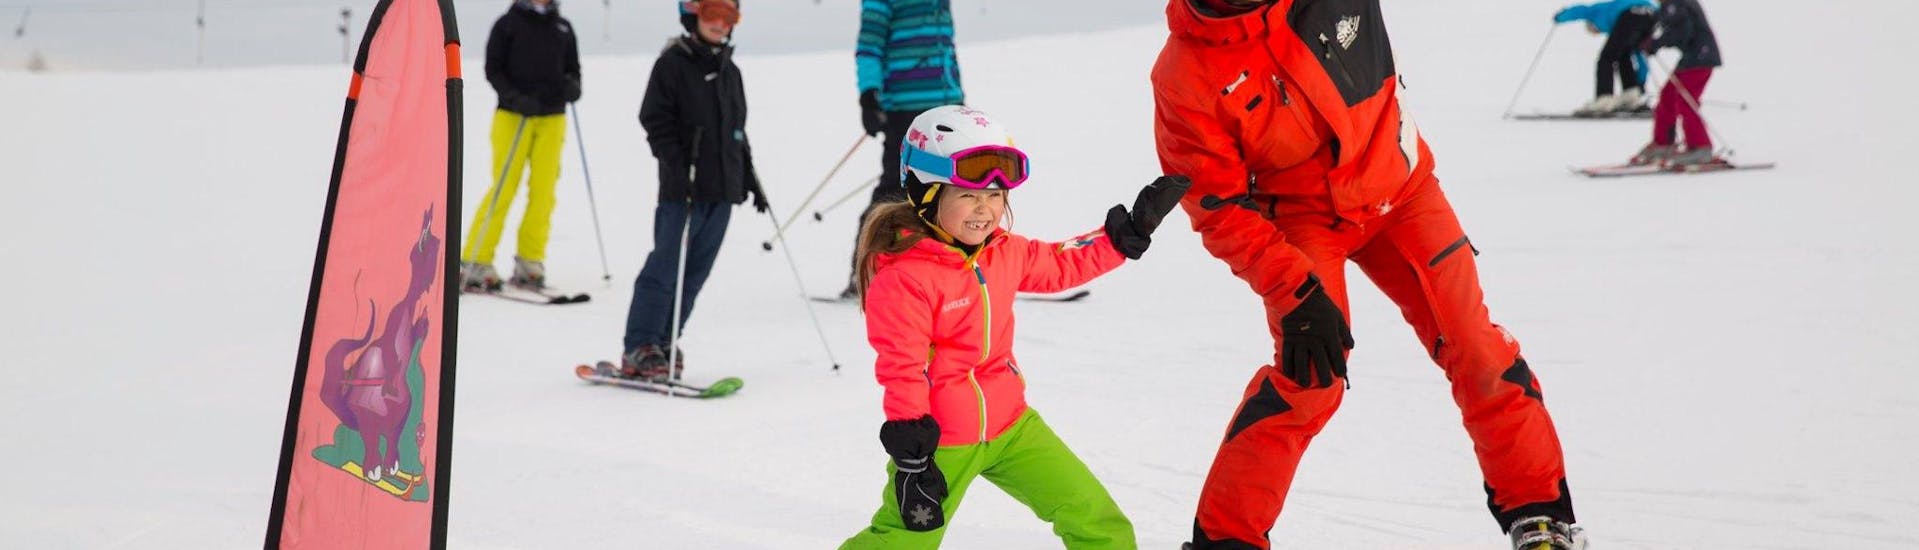 Kinder-Skikurs (ab 5 J.) für Anfänger mit Skischule Zahmer Kaiser.